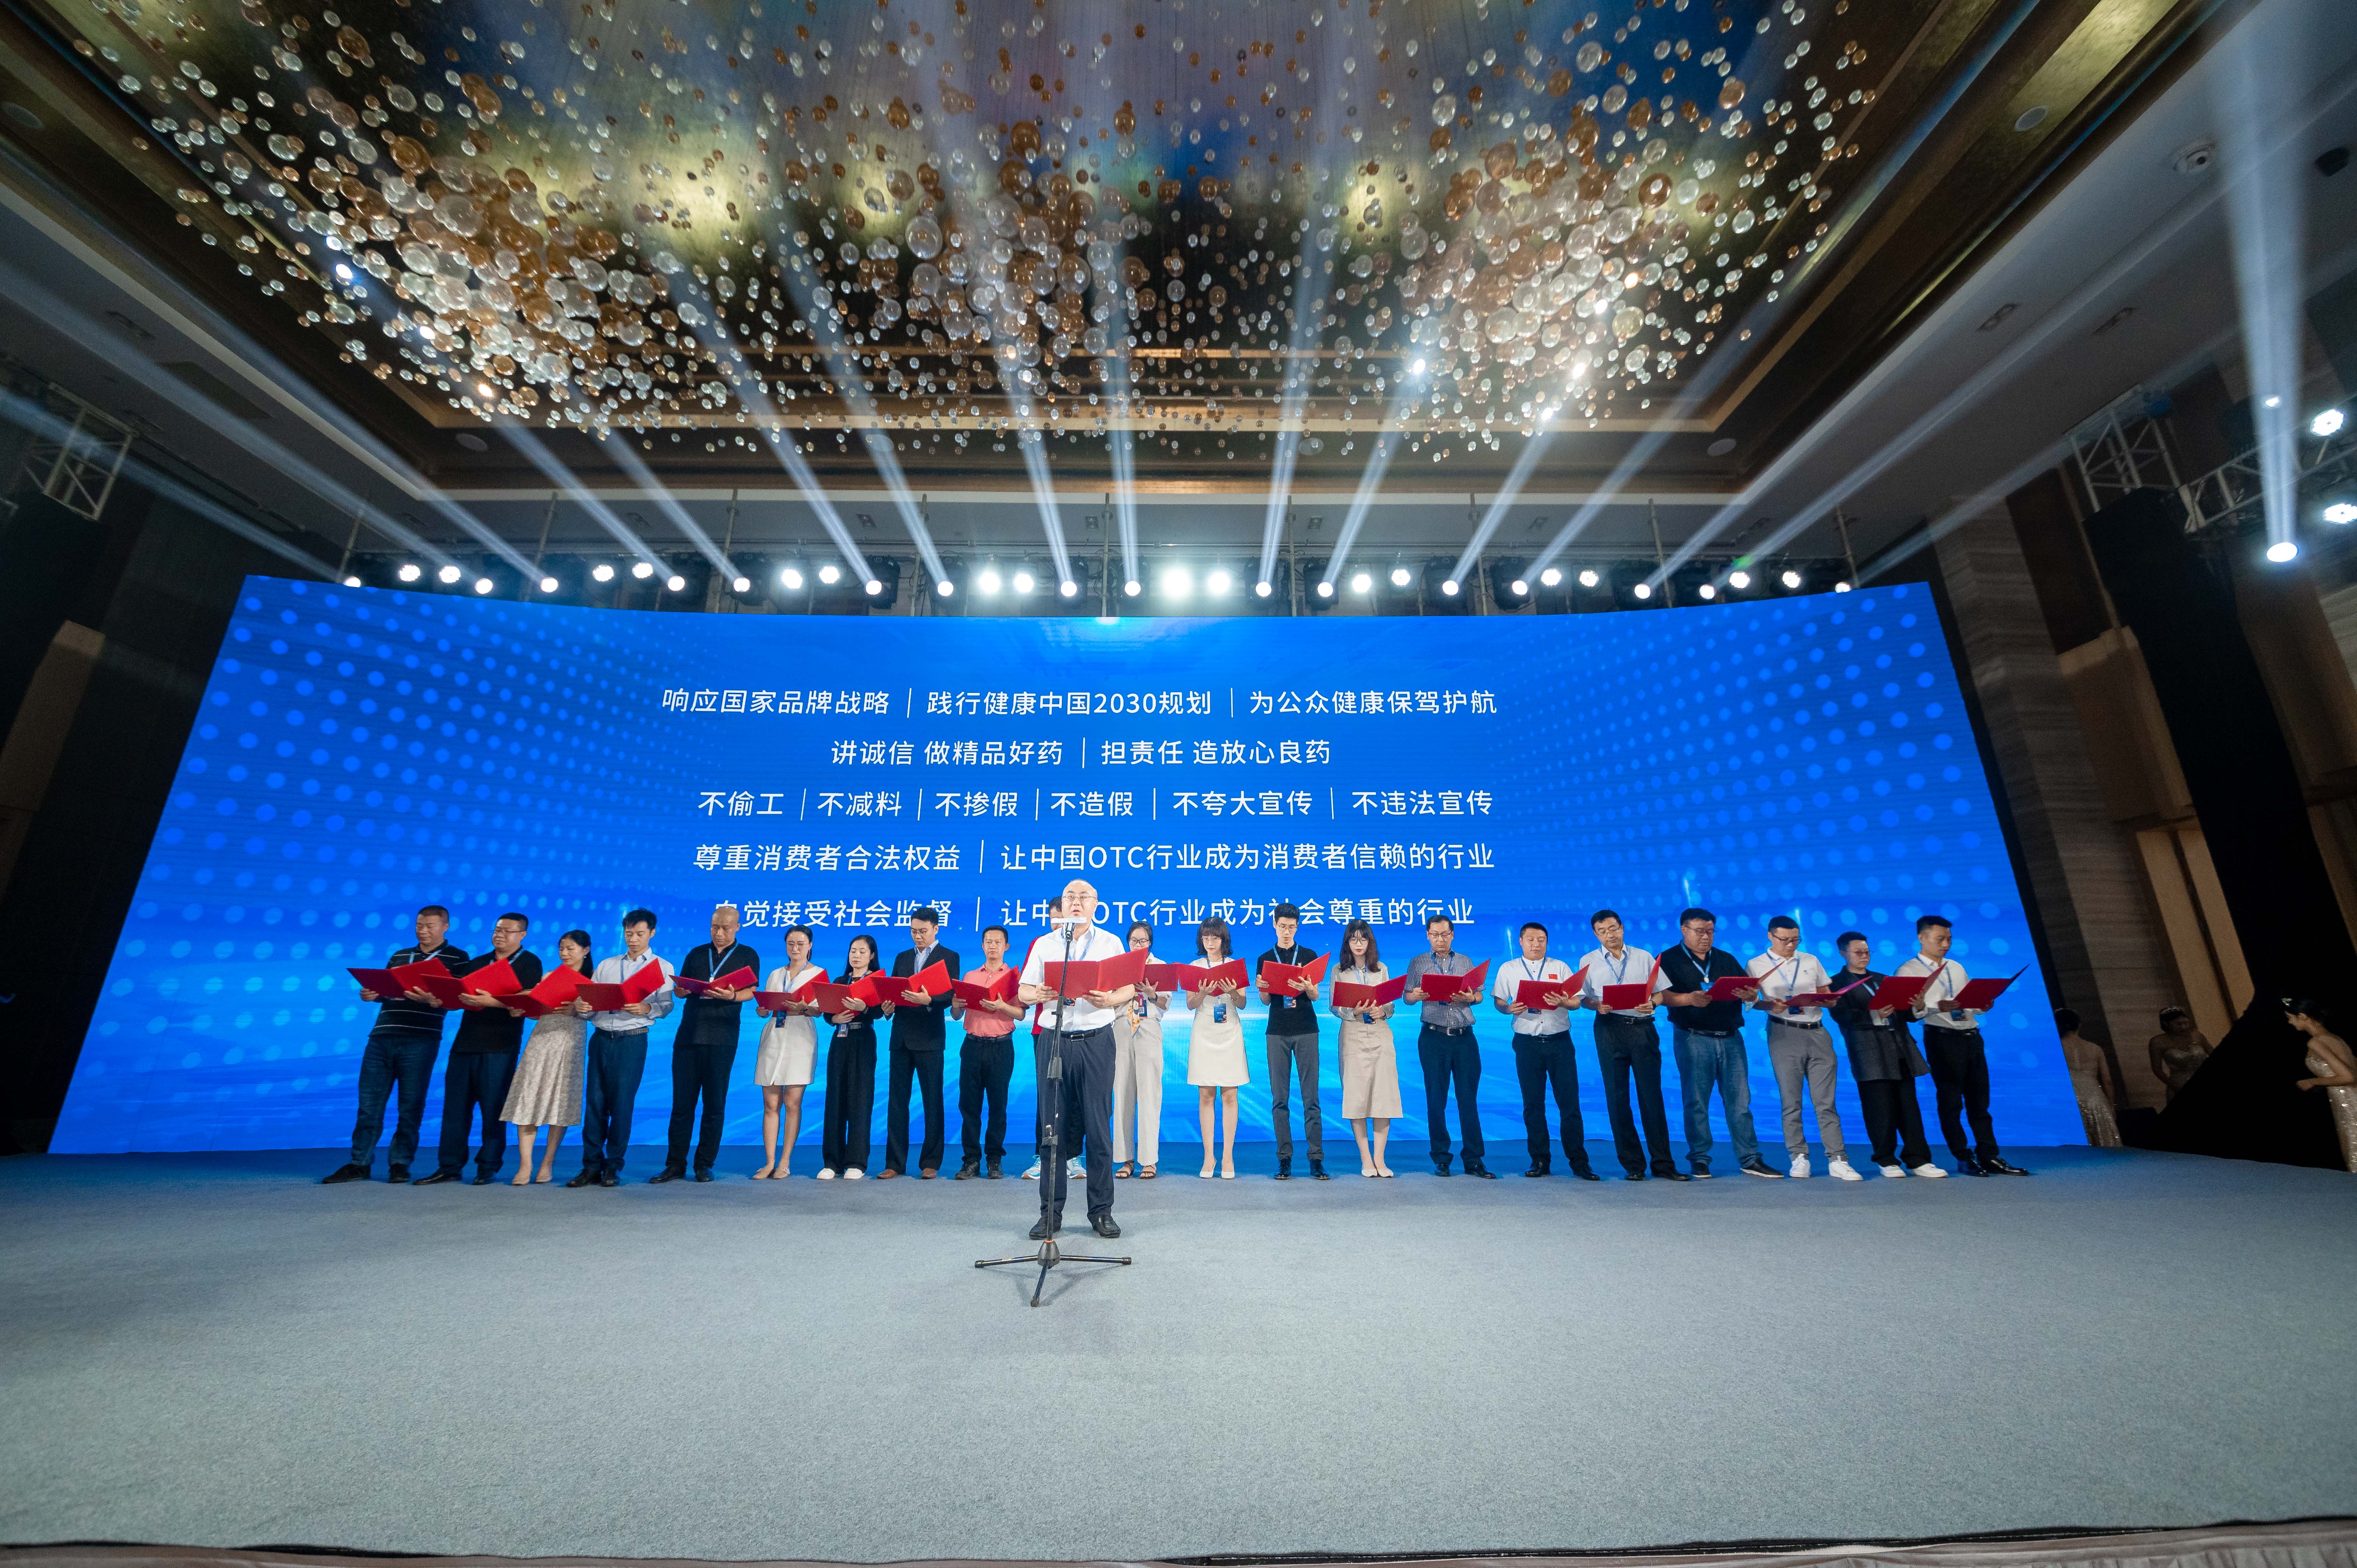 盛大启动 | 中国第五届OTC品牌宣传月再创新辉煌！